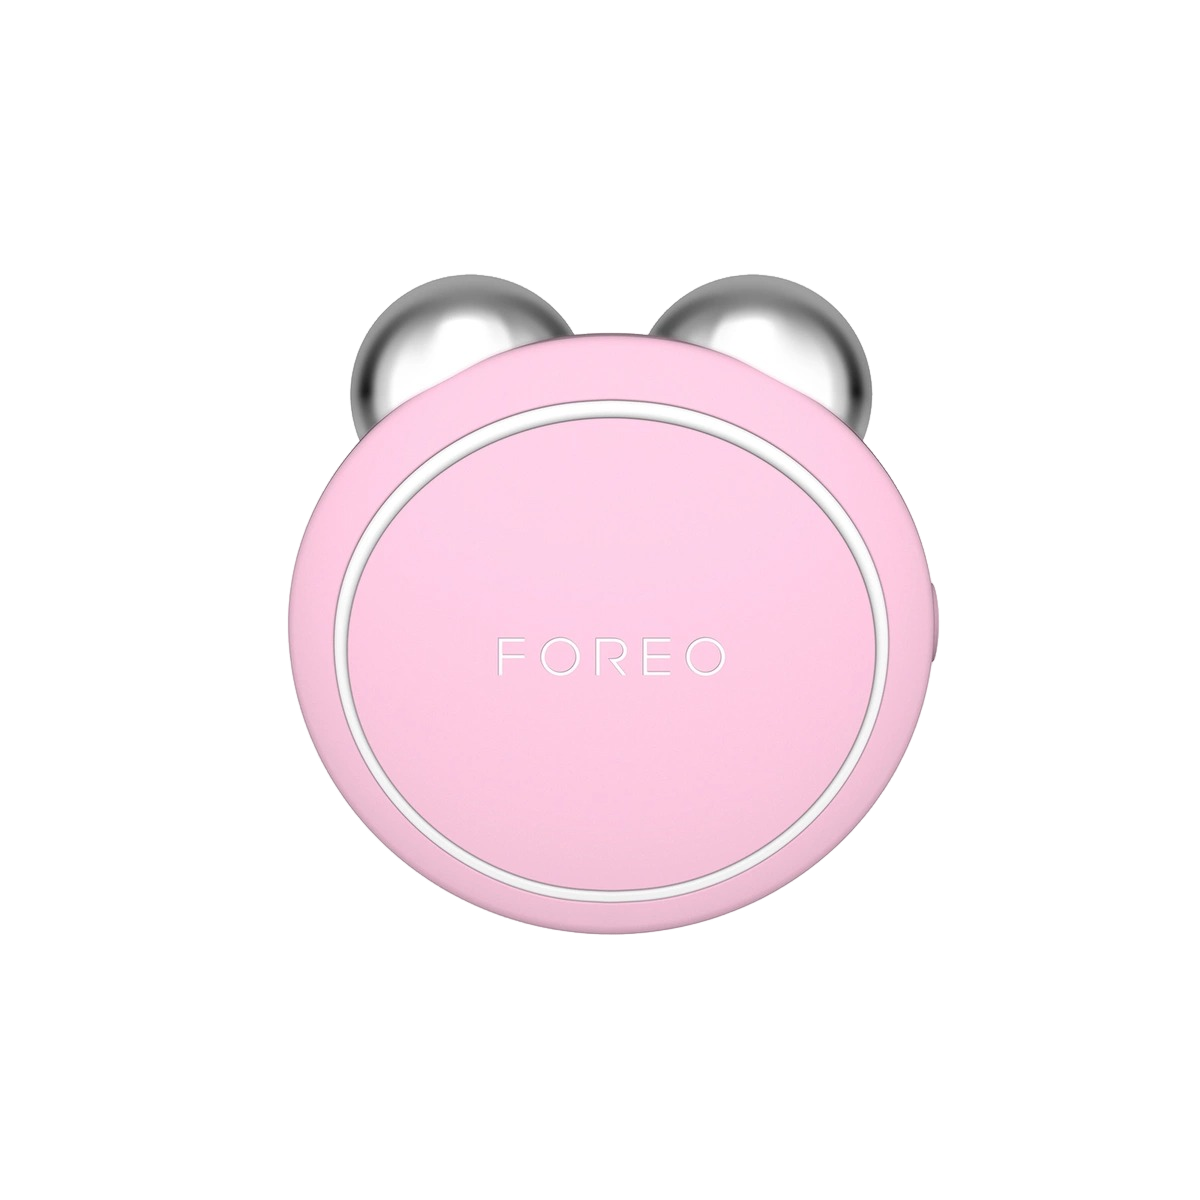 Микротоковое тонизирующее устройство для лица Bear Mini Pearl Pink купить в VISAGEHALL